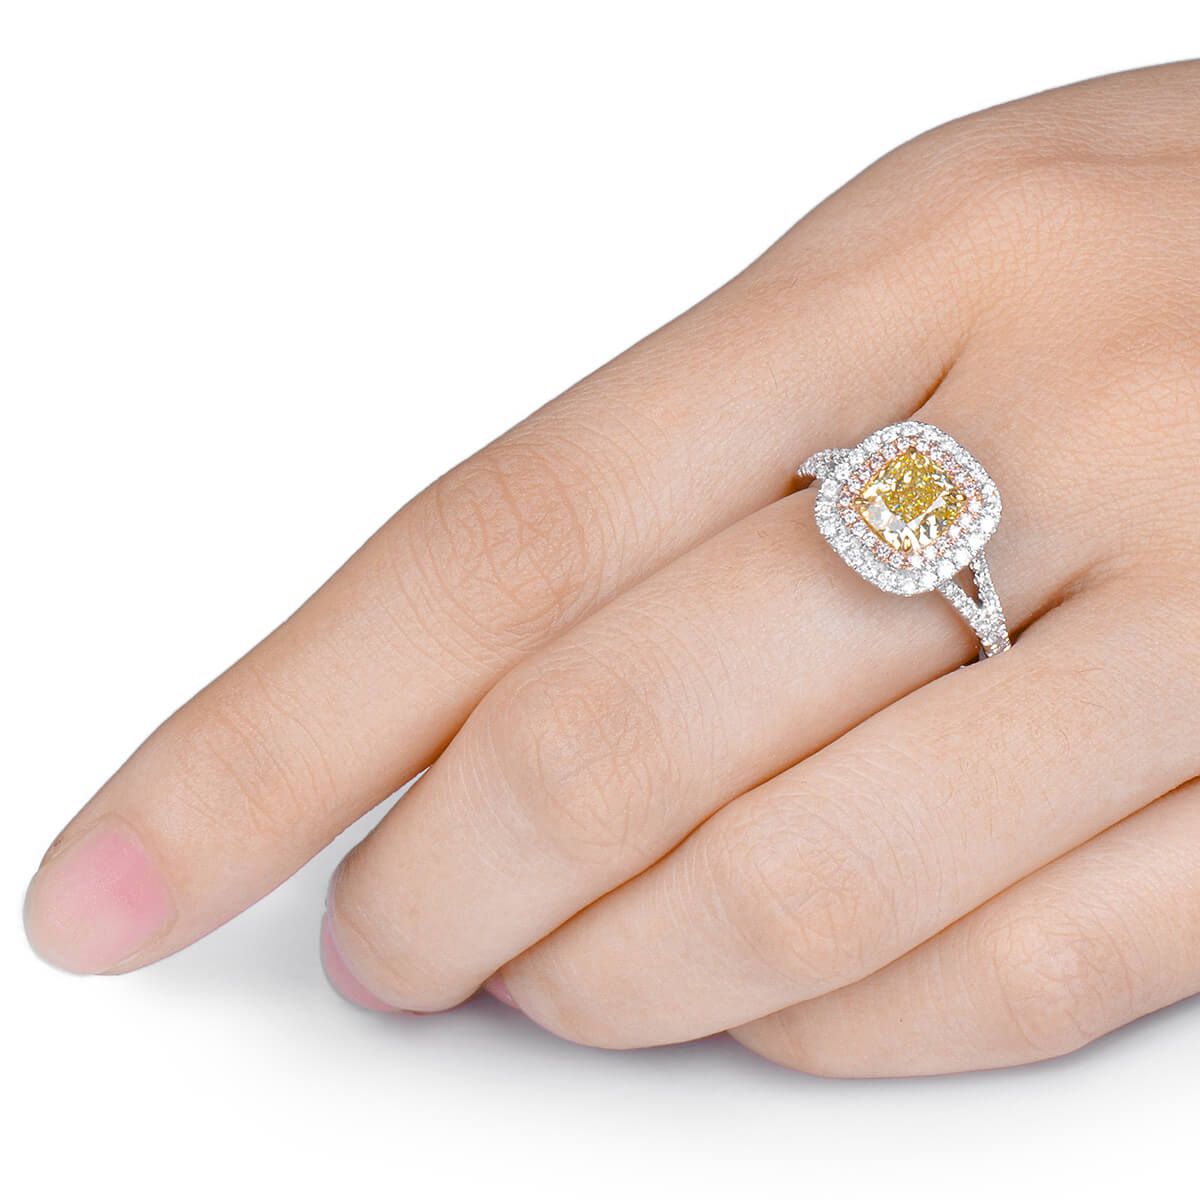 Fancy Yellow Diamond Ring, 1.37 Ct. (1.84 Ct. TW), Cushion shape, GIA Certified, 6202753557